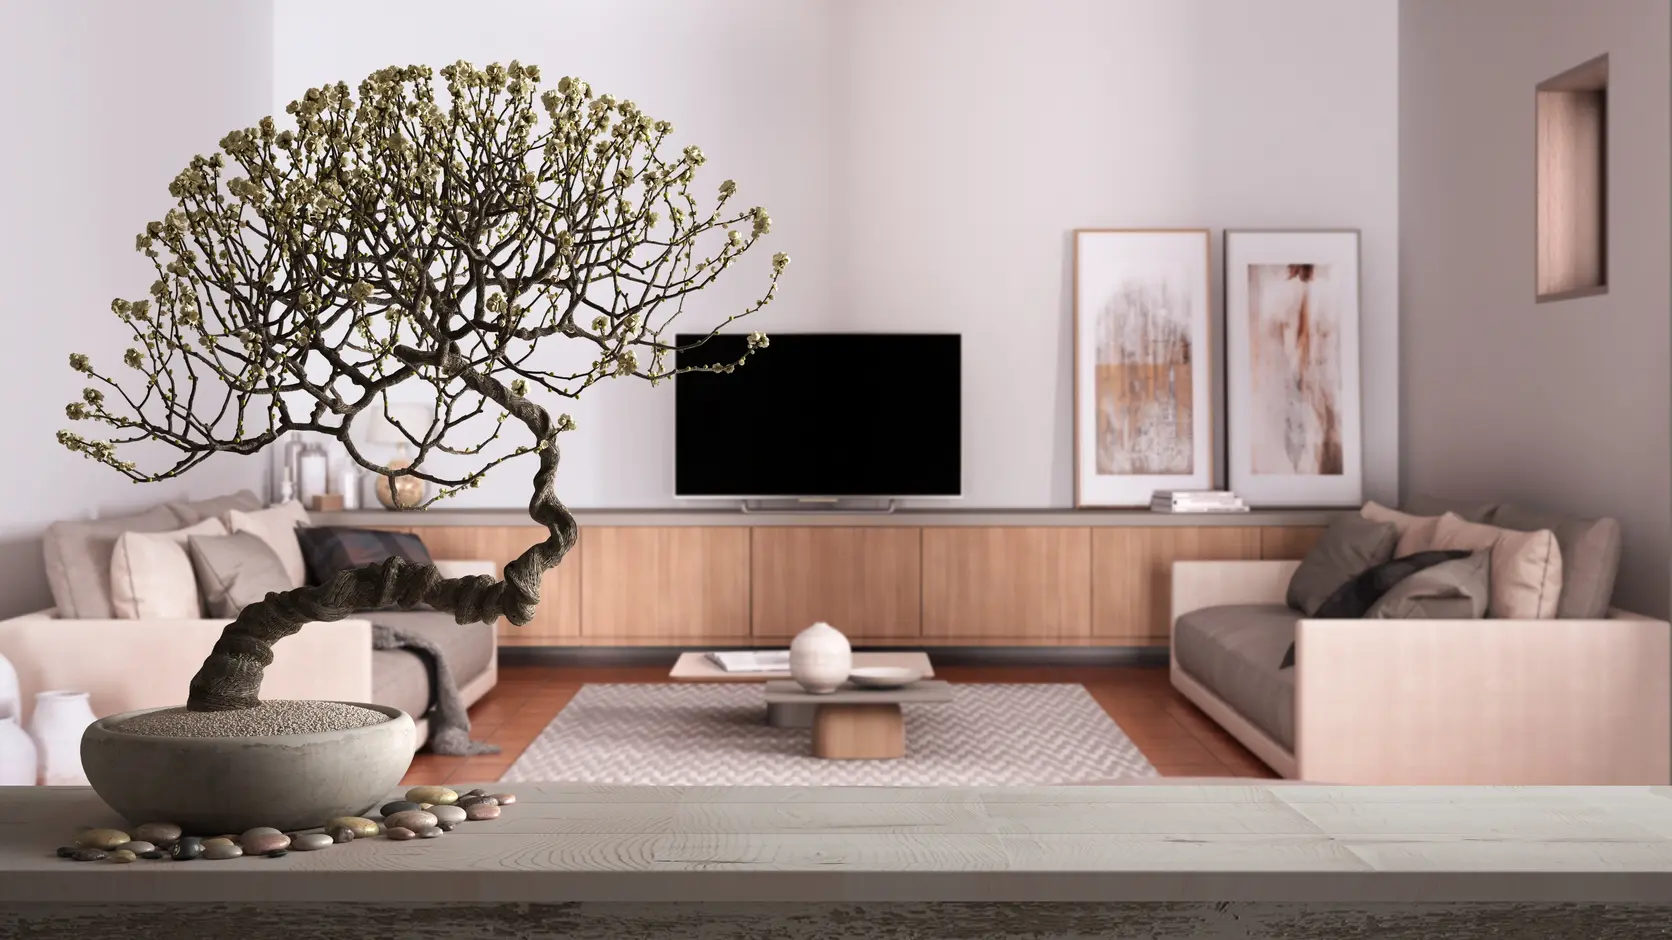 Salon w kolorze beżowym z szafka rtv i drzewkiem bonsai, styl japoński. Element charakterystyczny: szafka rtv i drzewko bonsai